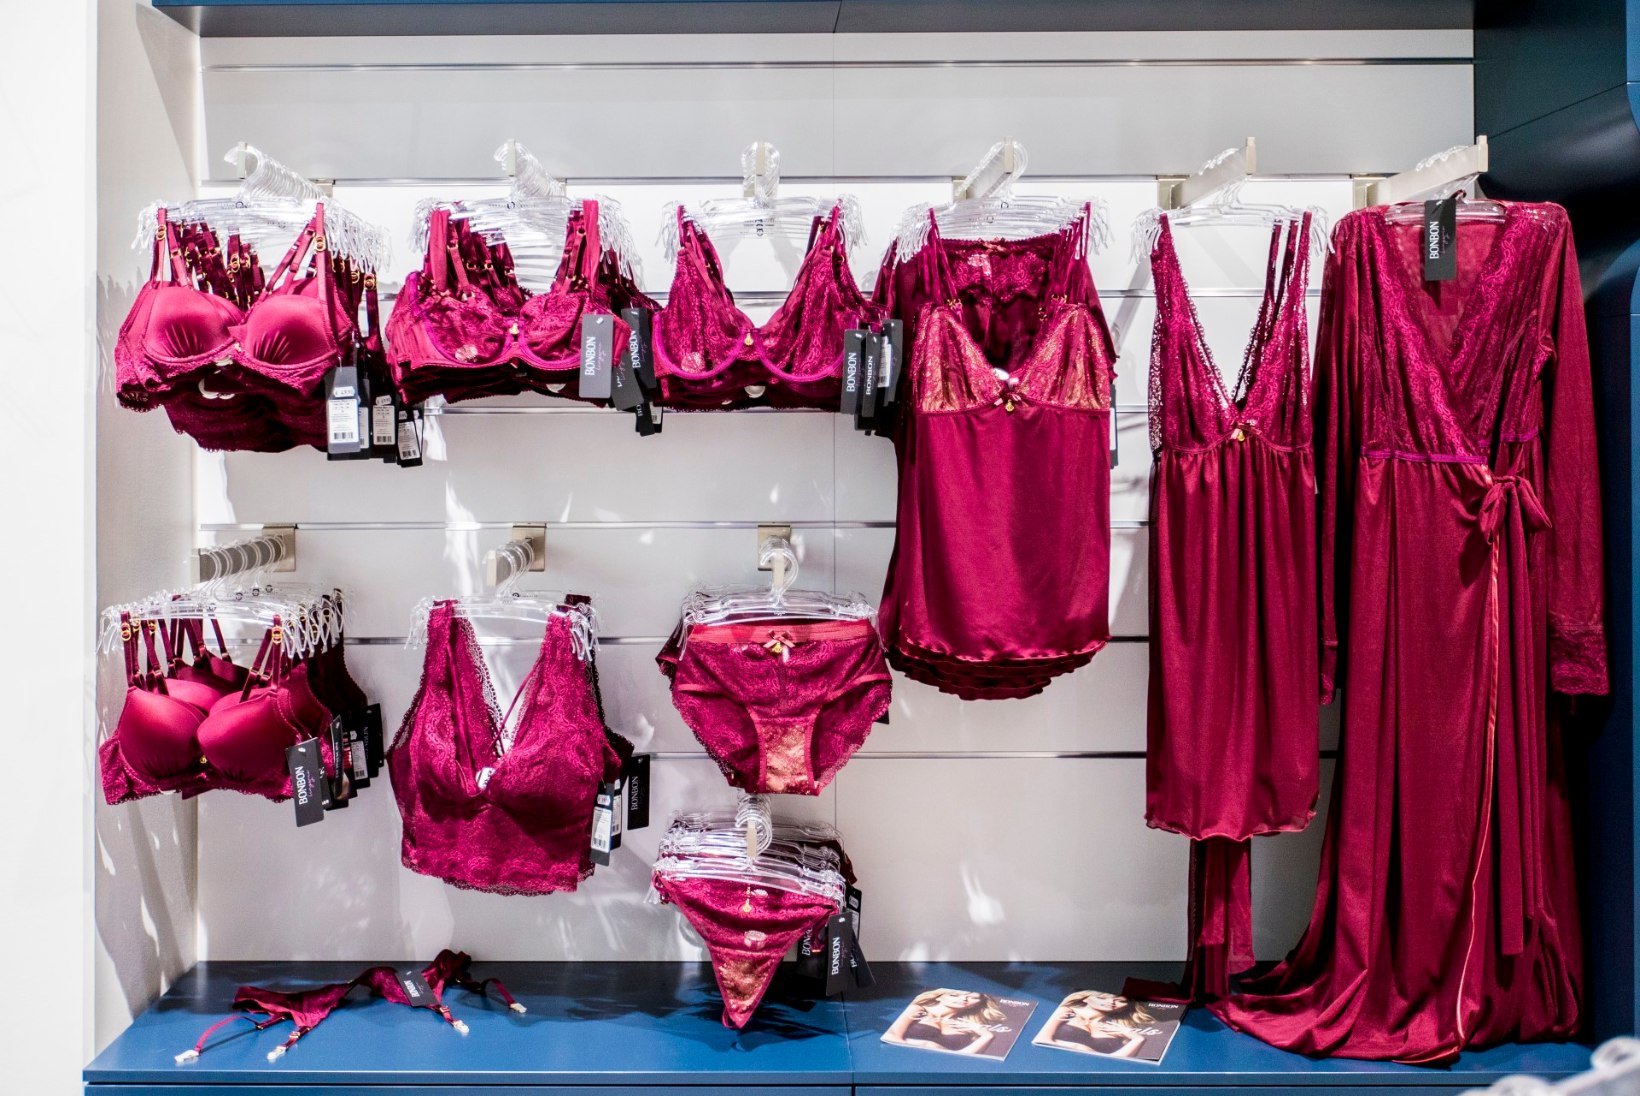 SILMIPAITAV GALERII | Nautica keskuses avatud BonBon Lingerie kauplus näitab sensuaalset ja kaunist pesu!